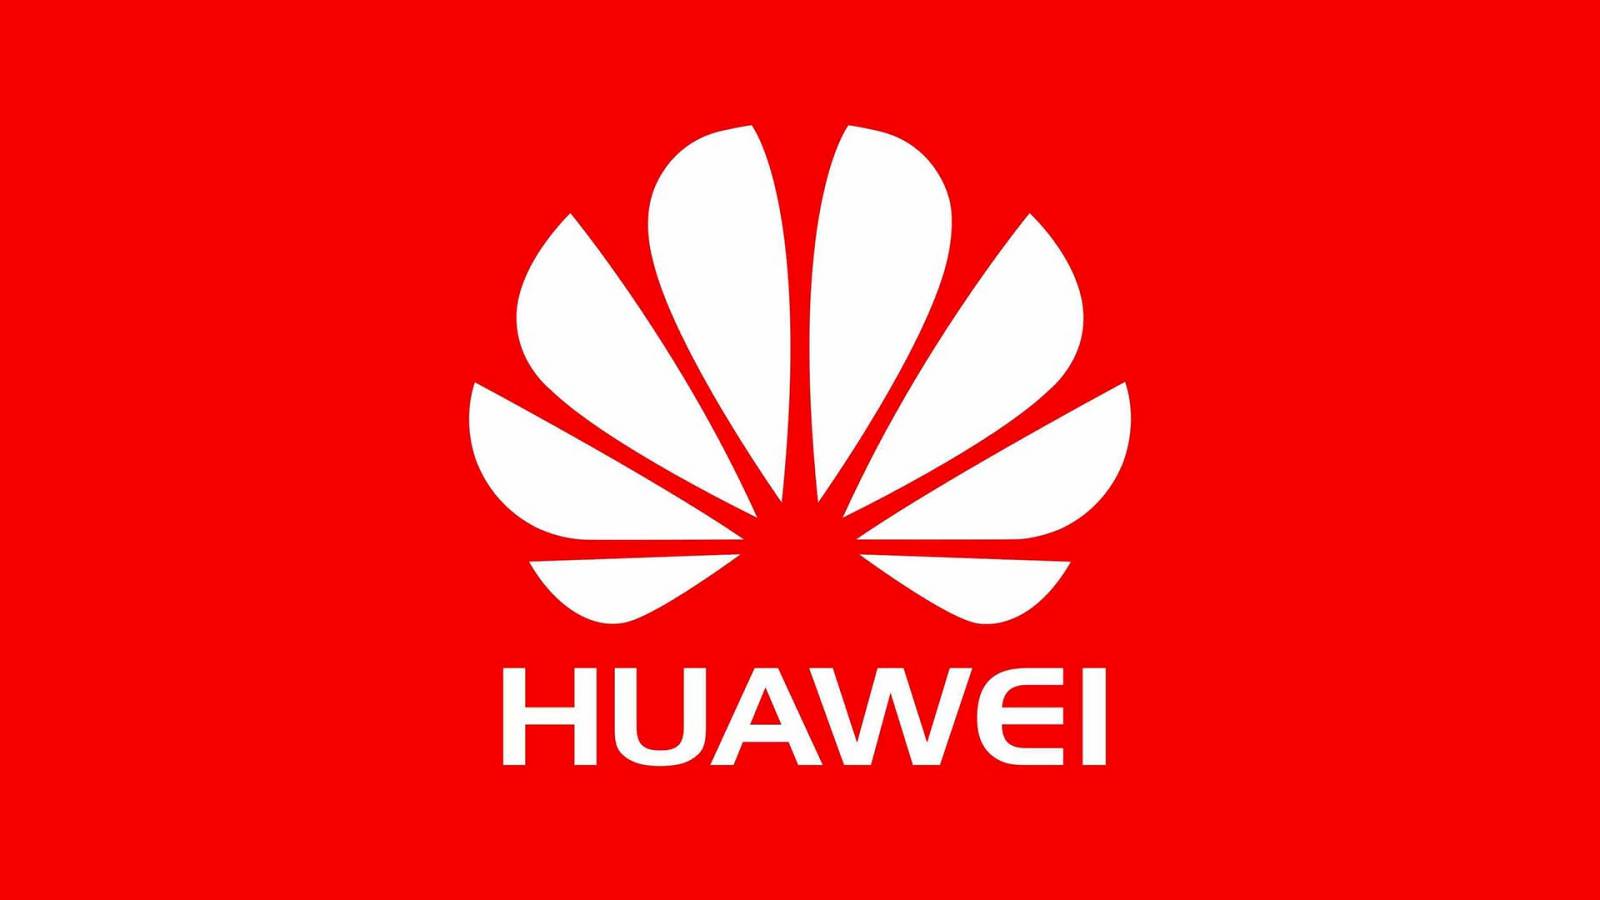 Huawei Founder iPad User